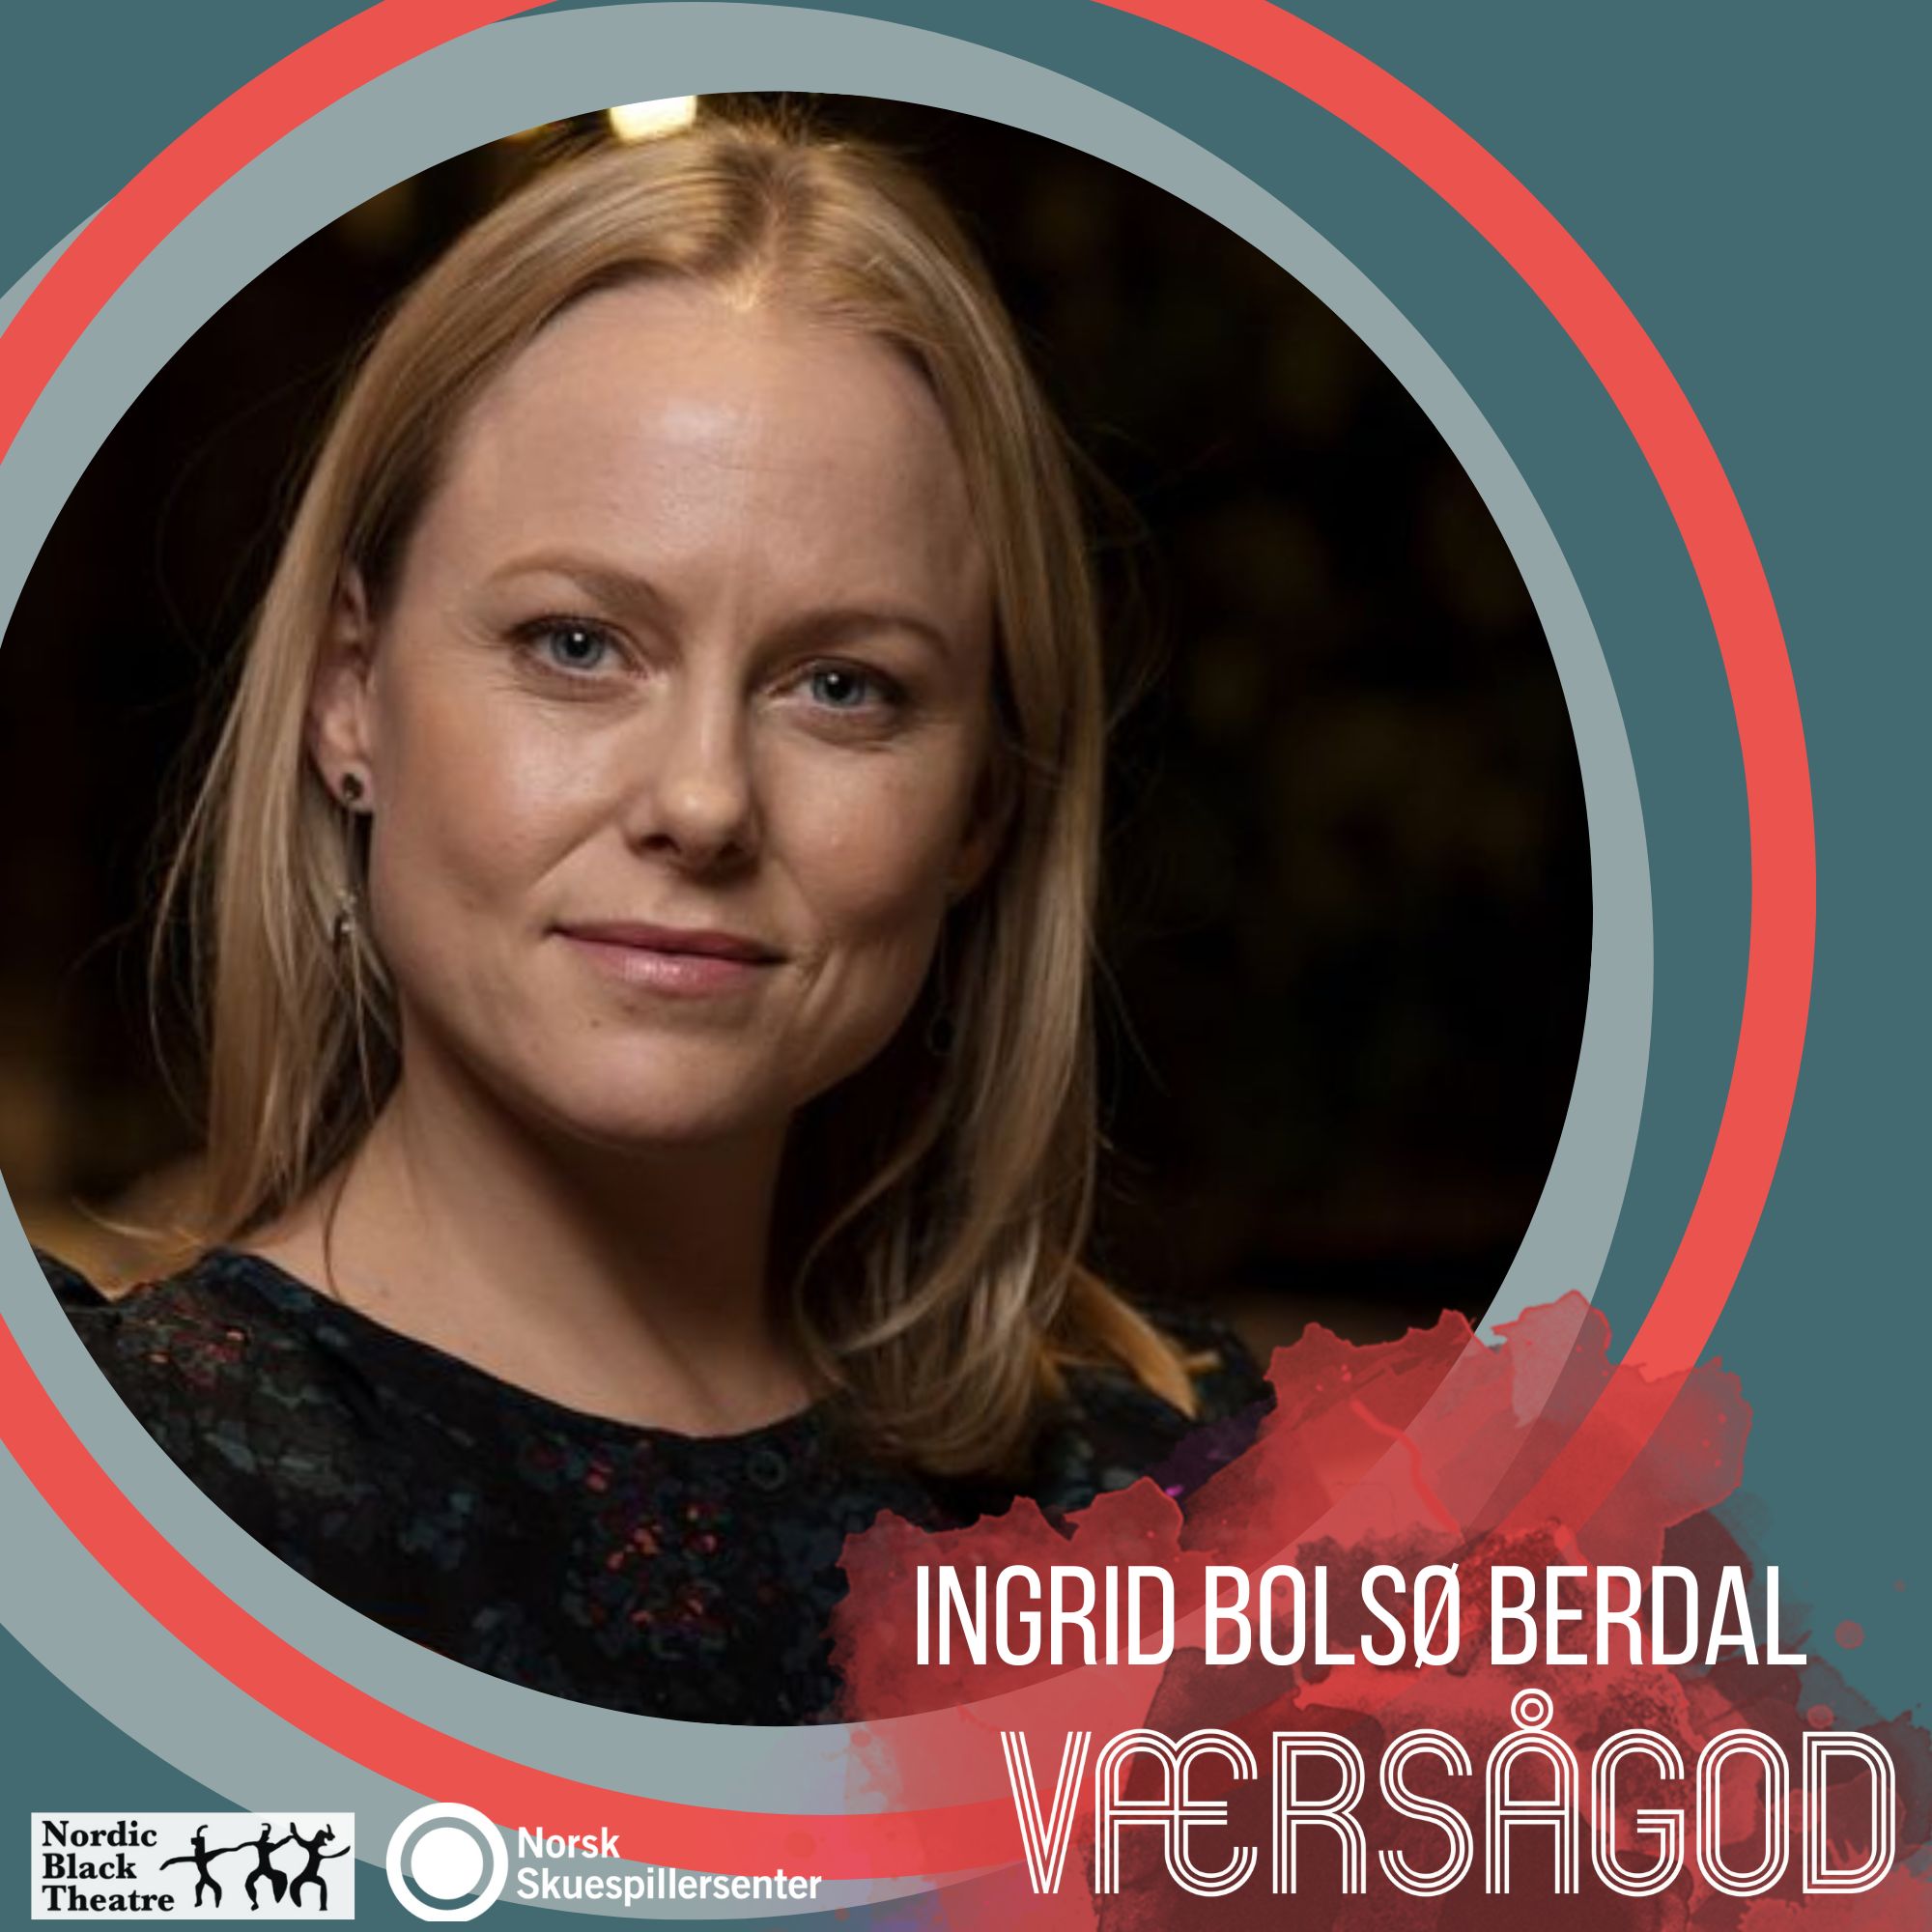 Plakat med Ingrid Bolsø Berdal